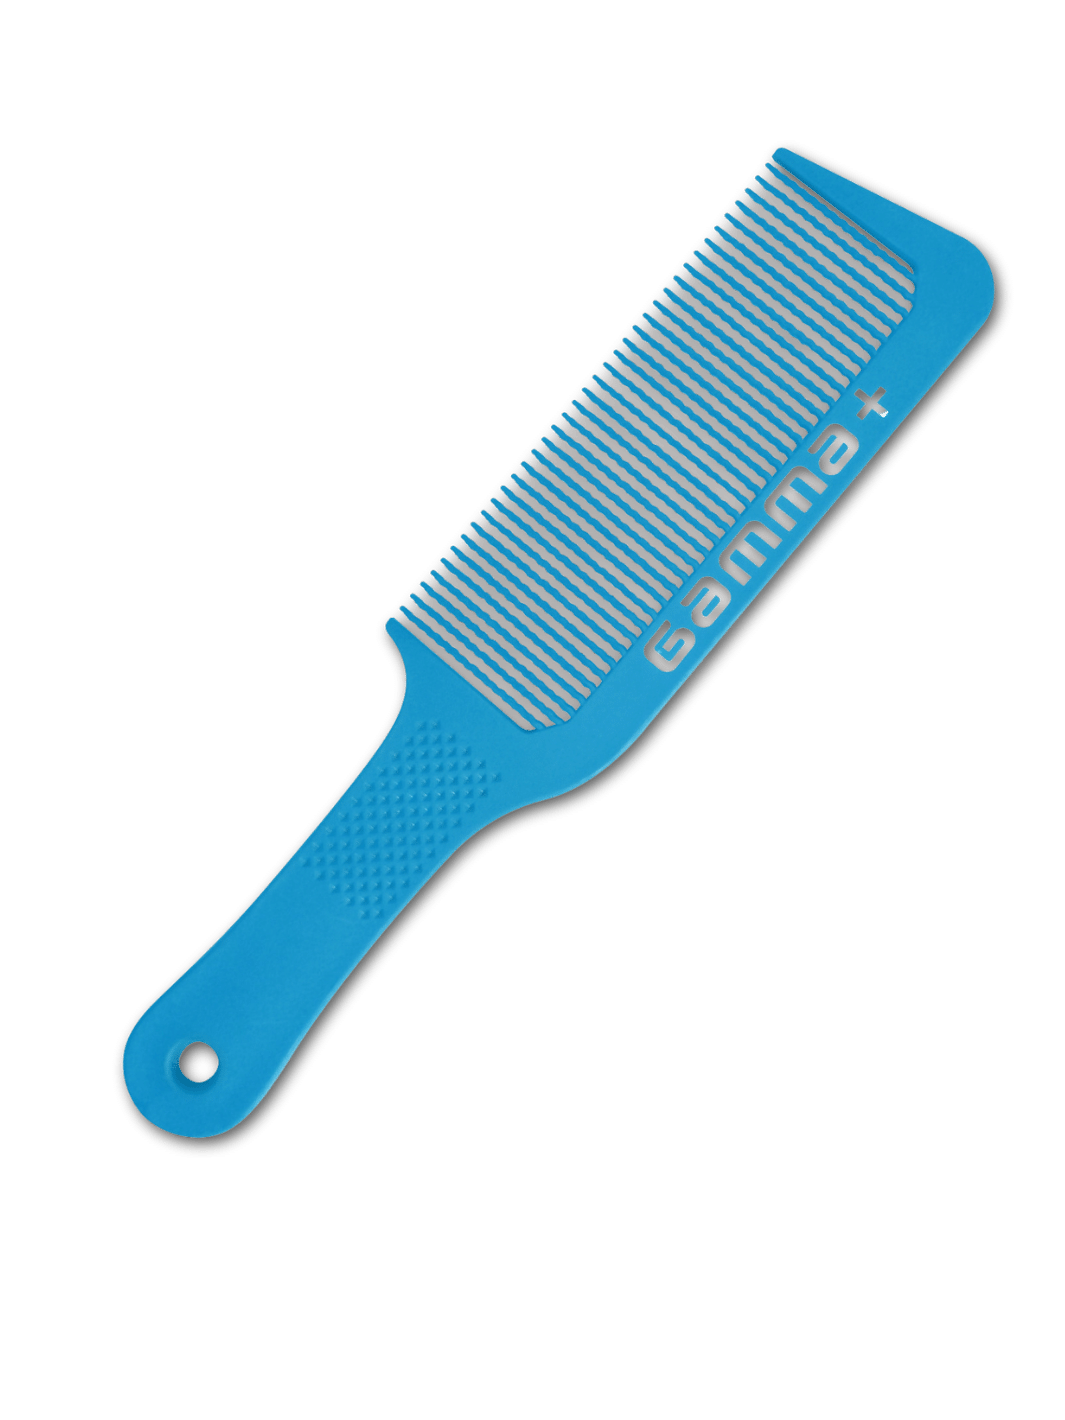 GAMMA+ Flow Barber Comb, blauer Schneidekamm für Haarschneidemaschinen, ideal für präzises Schneiden und Stylen, robustes und ergonomisches Design, verfügbar bei Phullcutz.